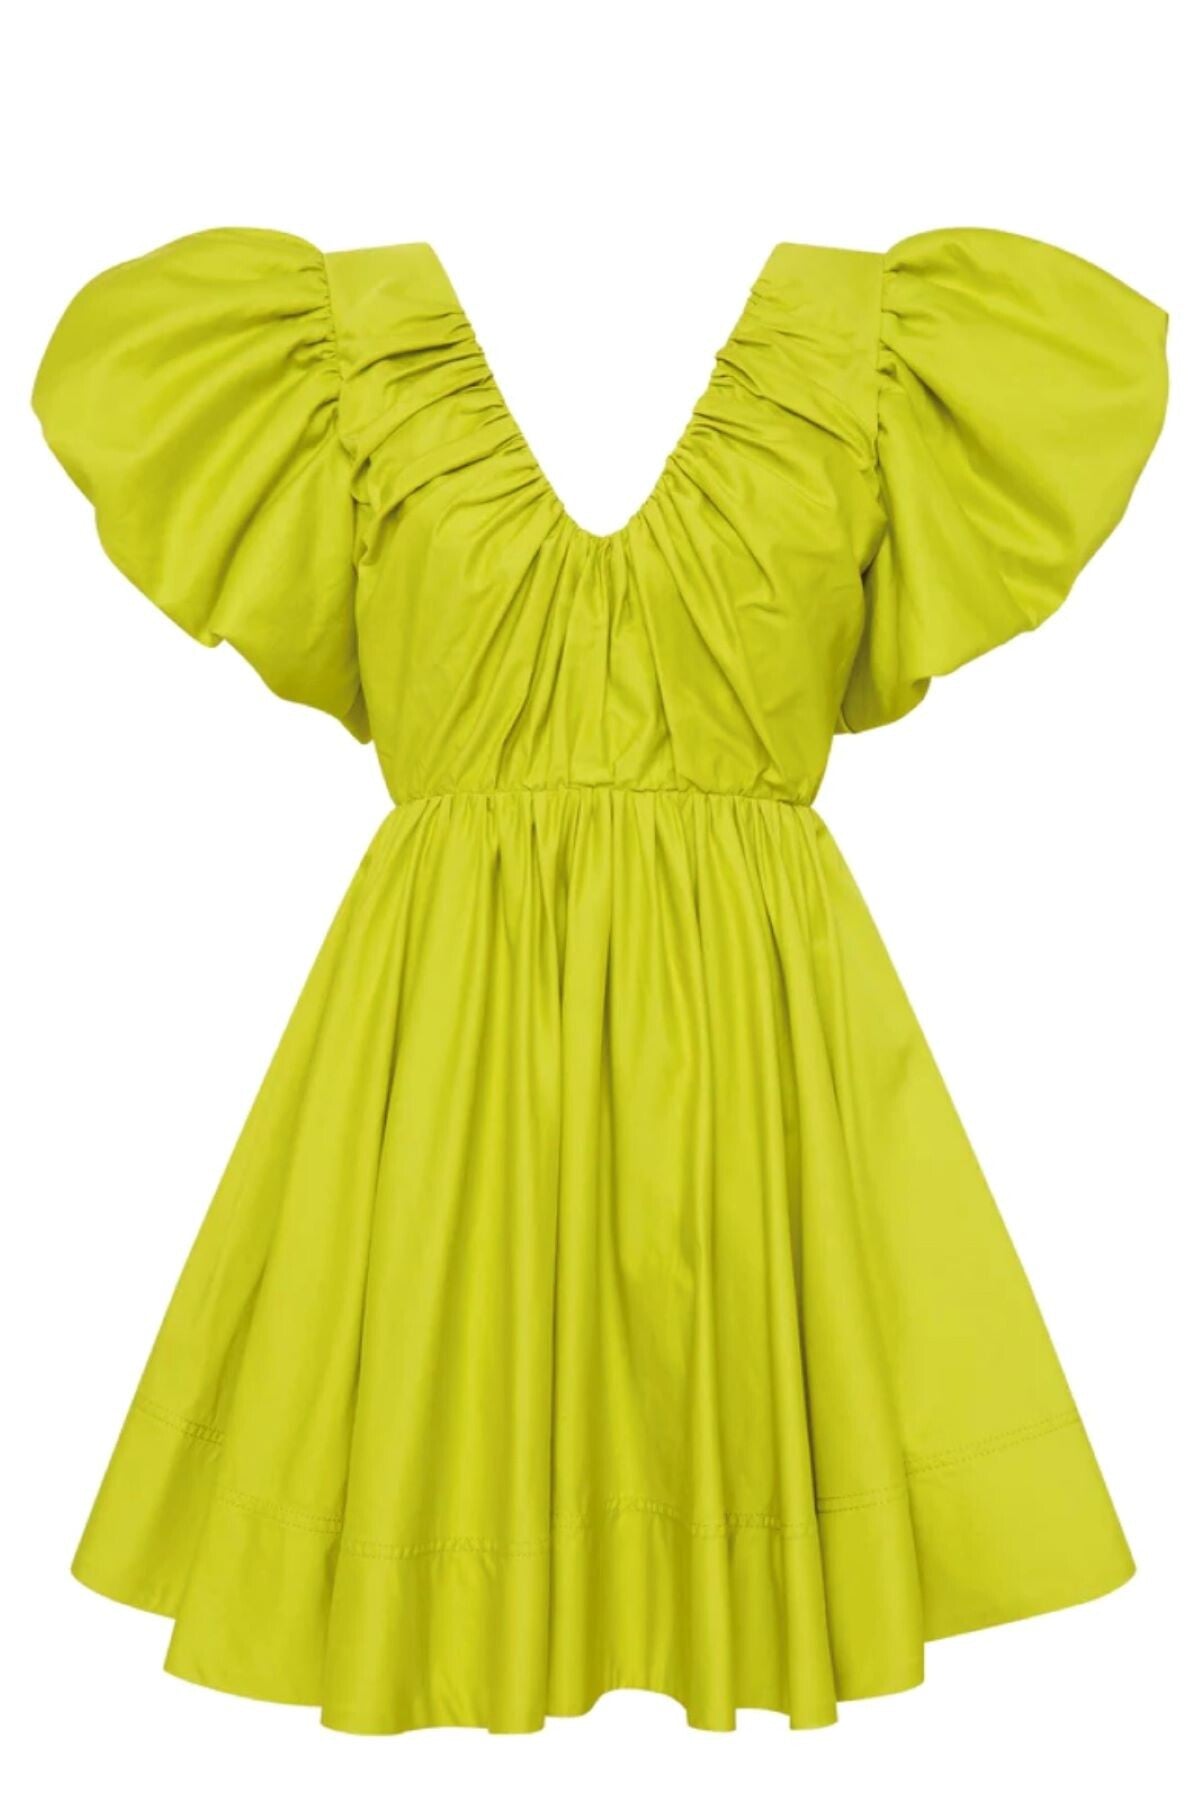 Gretta Bow Back Mini Dress in Chartreuse Green